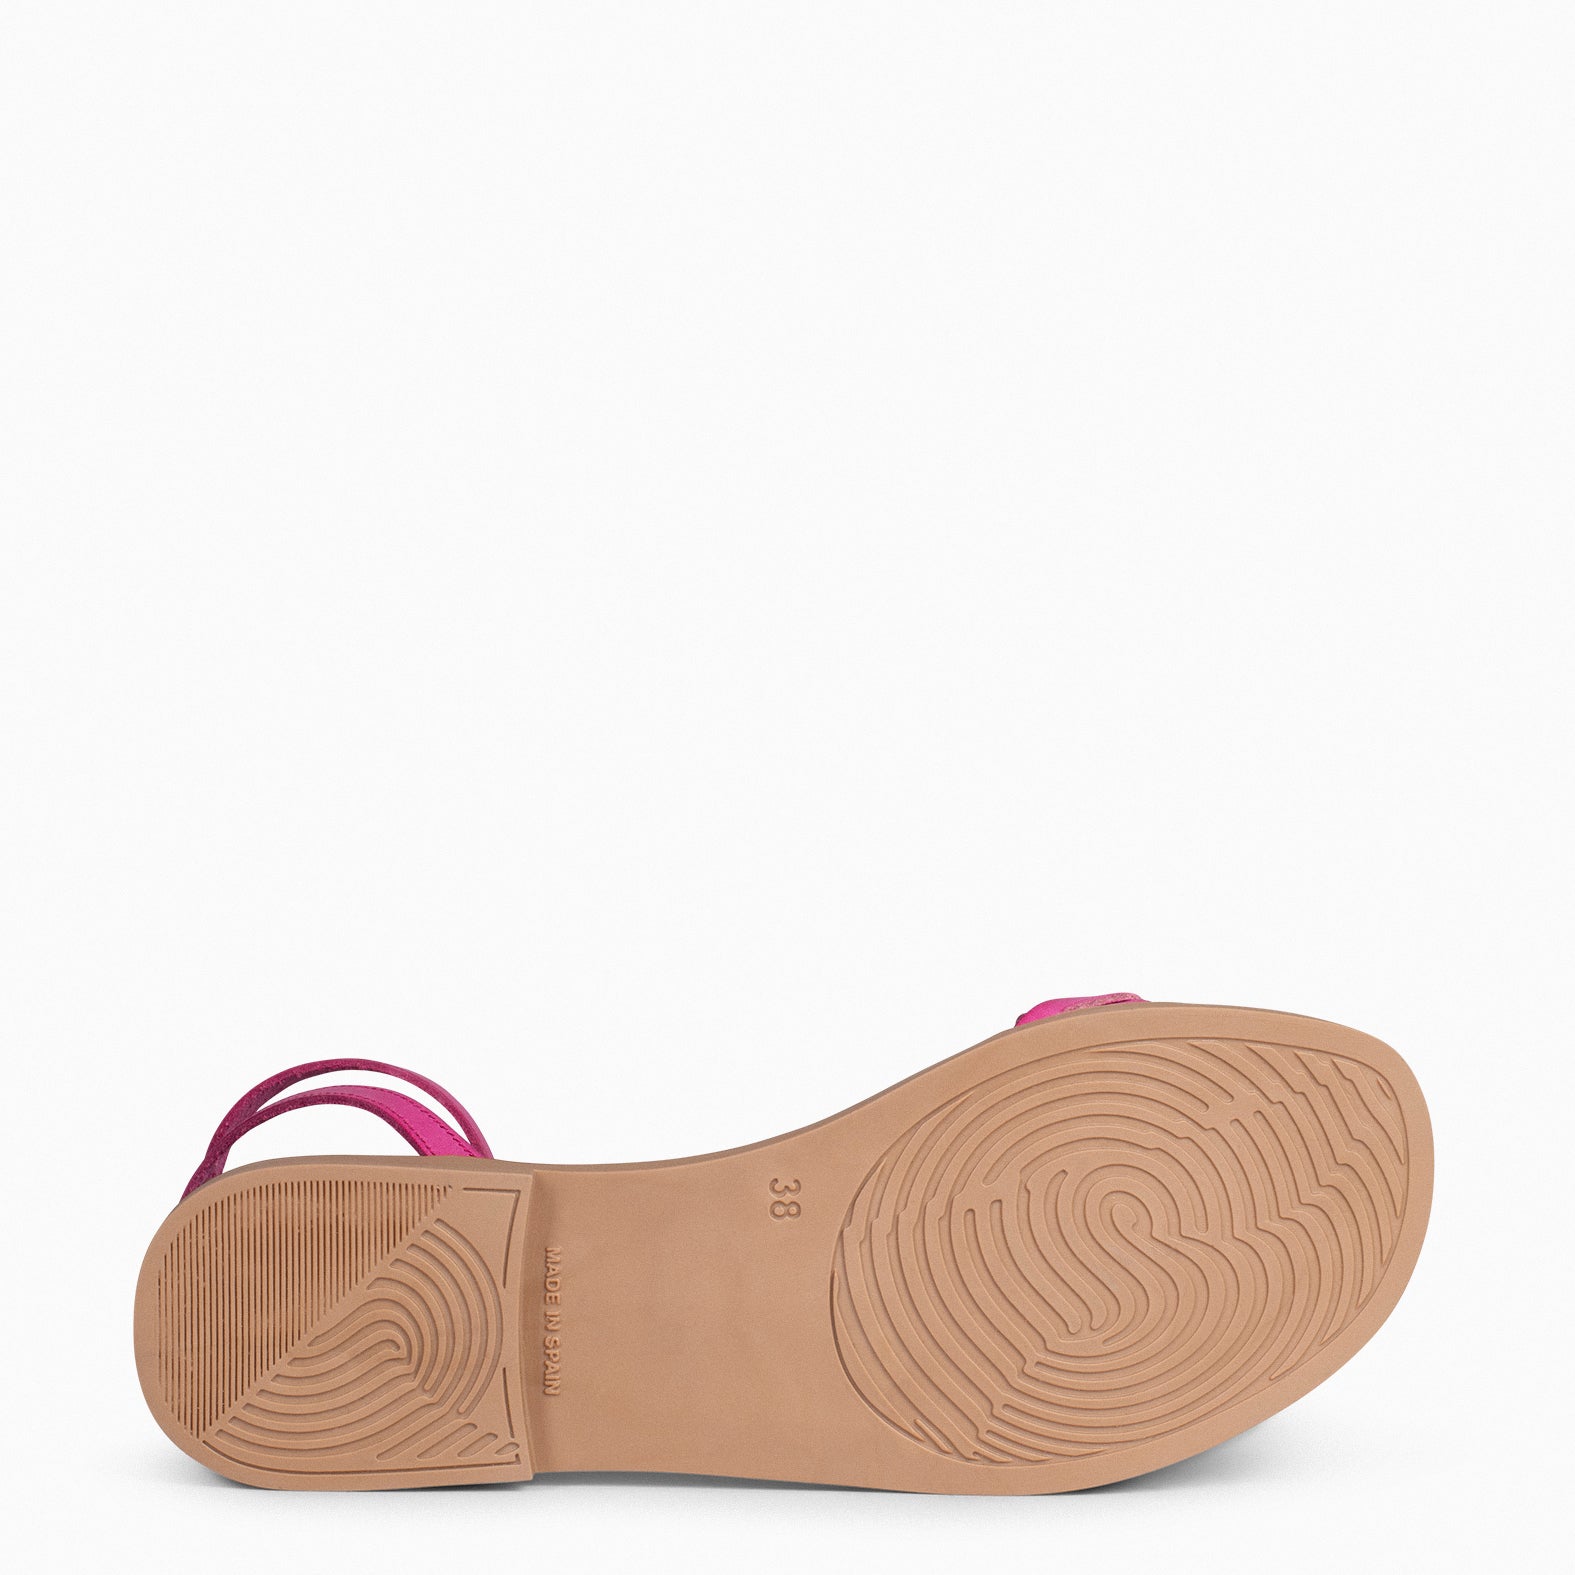 ARECA - FUCHSIA Women's Flat Sandals